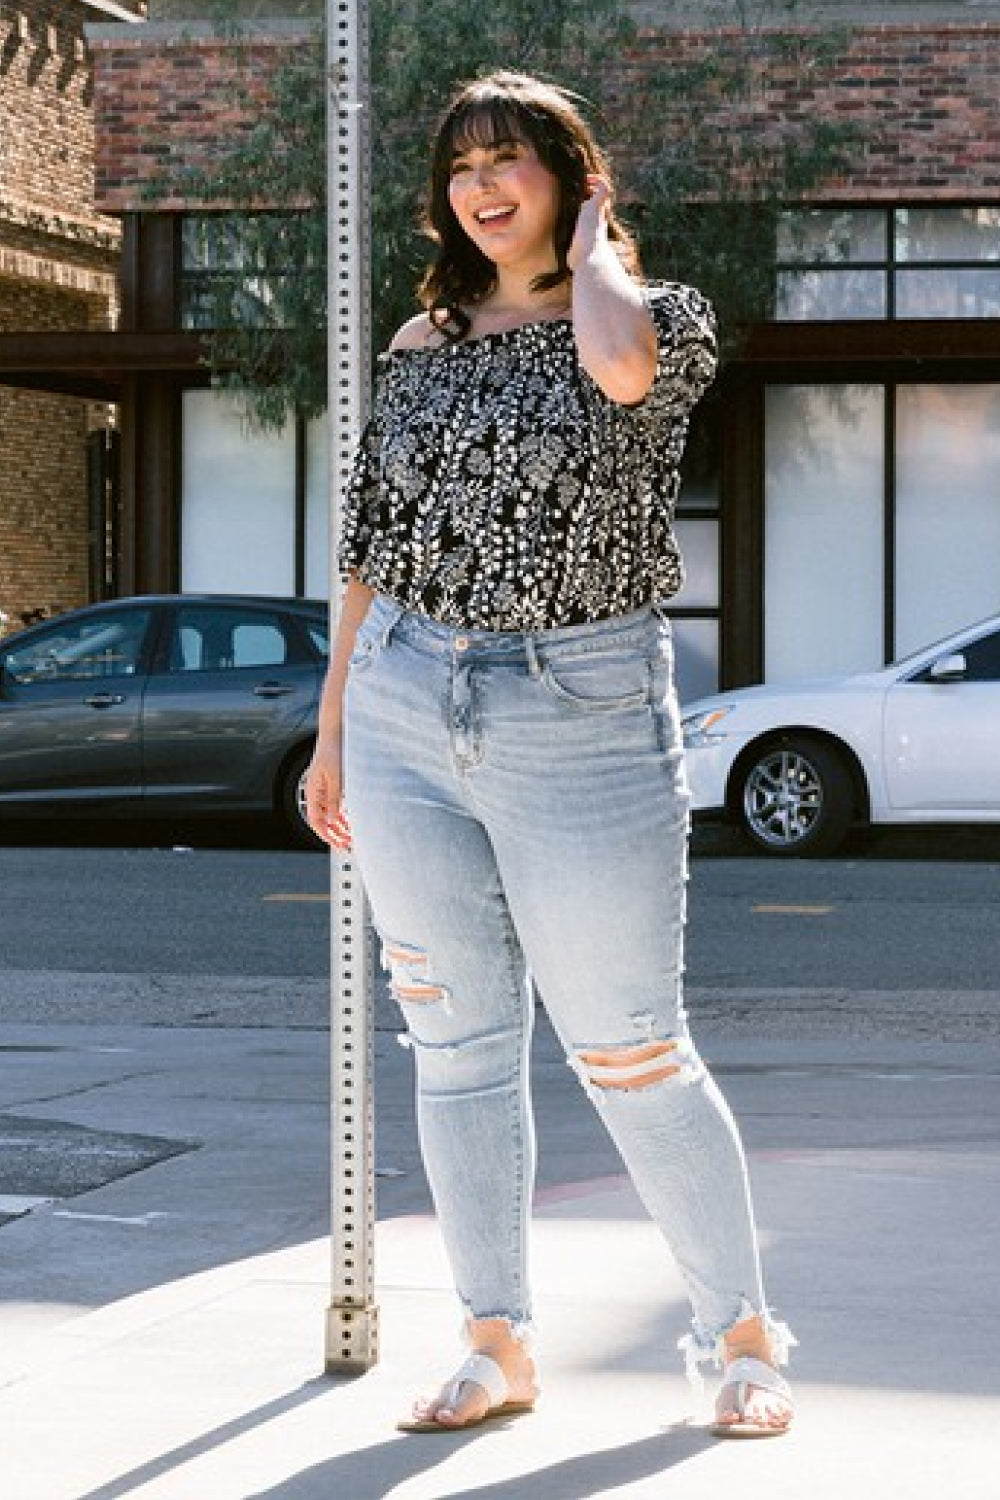 Women’s Lovervet Full Size Lauren Distressed High Rise Skinny Jeans